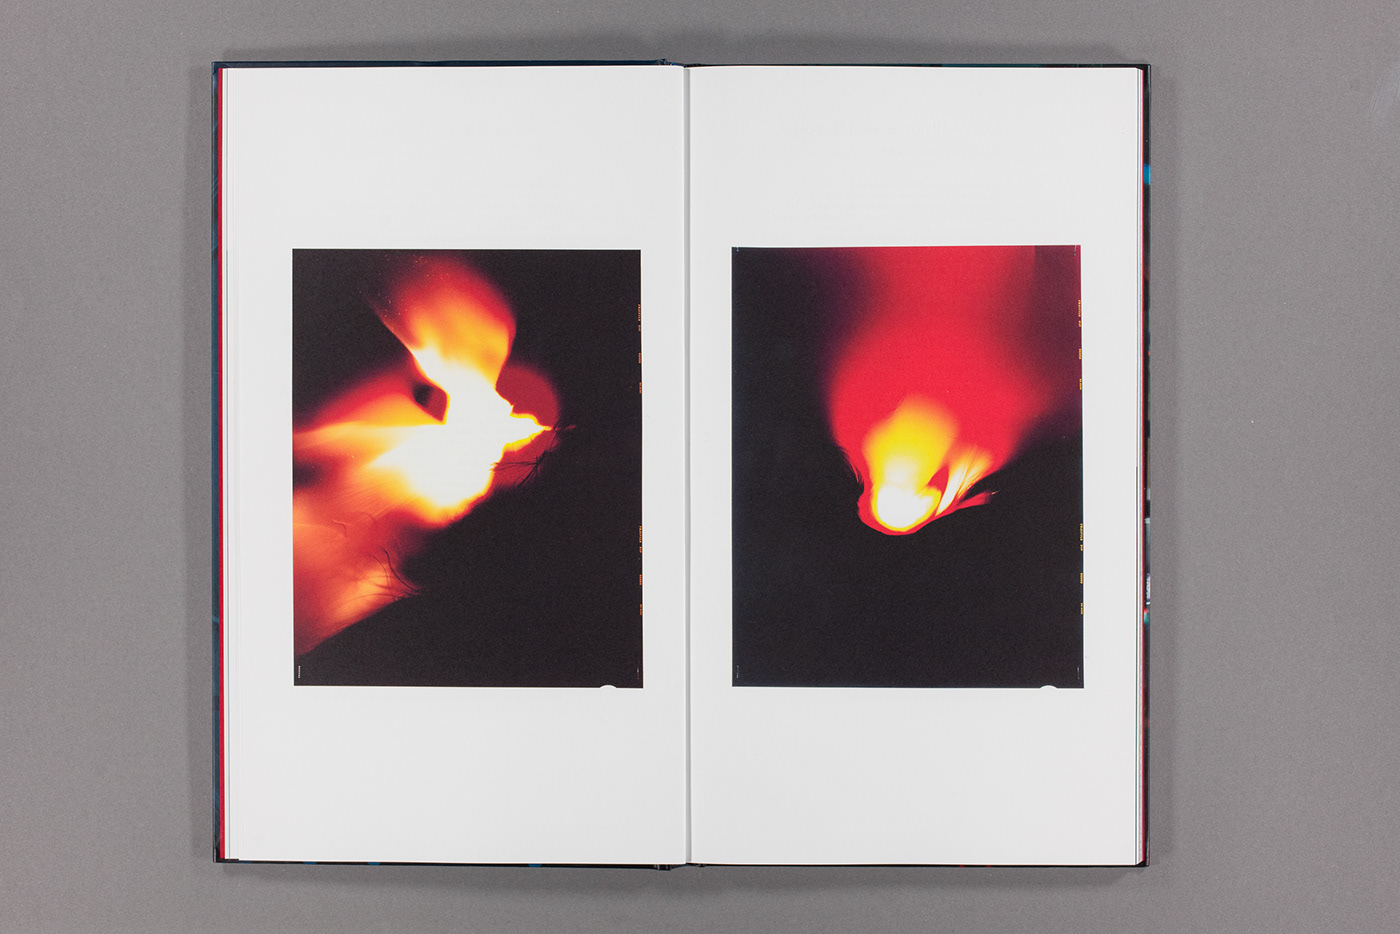 art book book design graphic design  Kehrer tim otto roth typography   ZKM